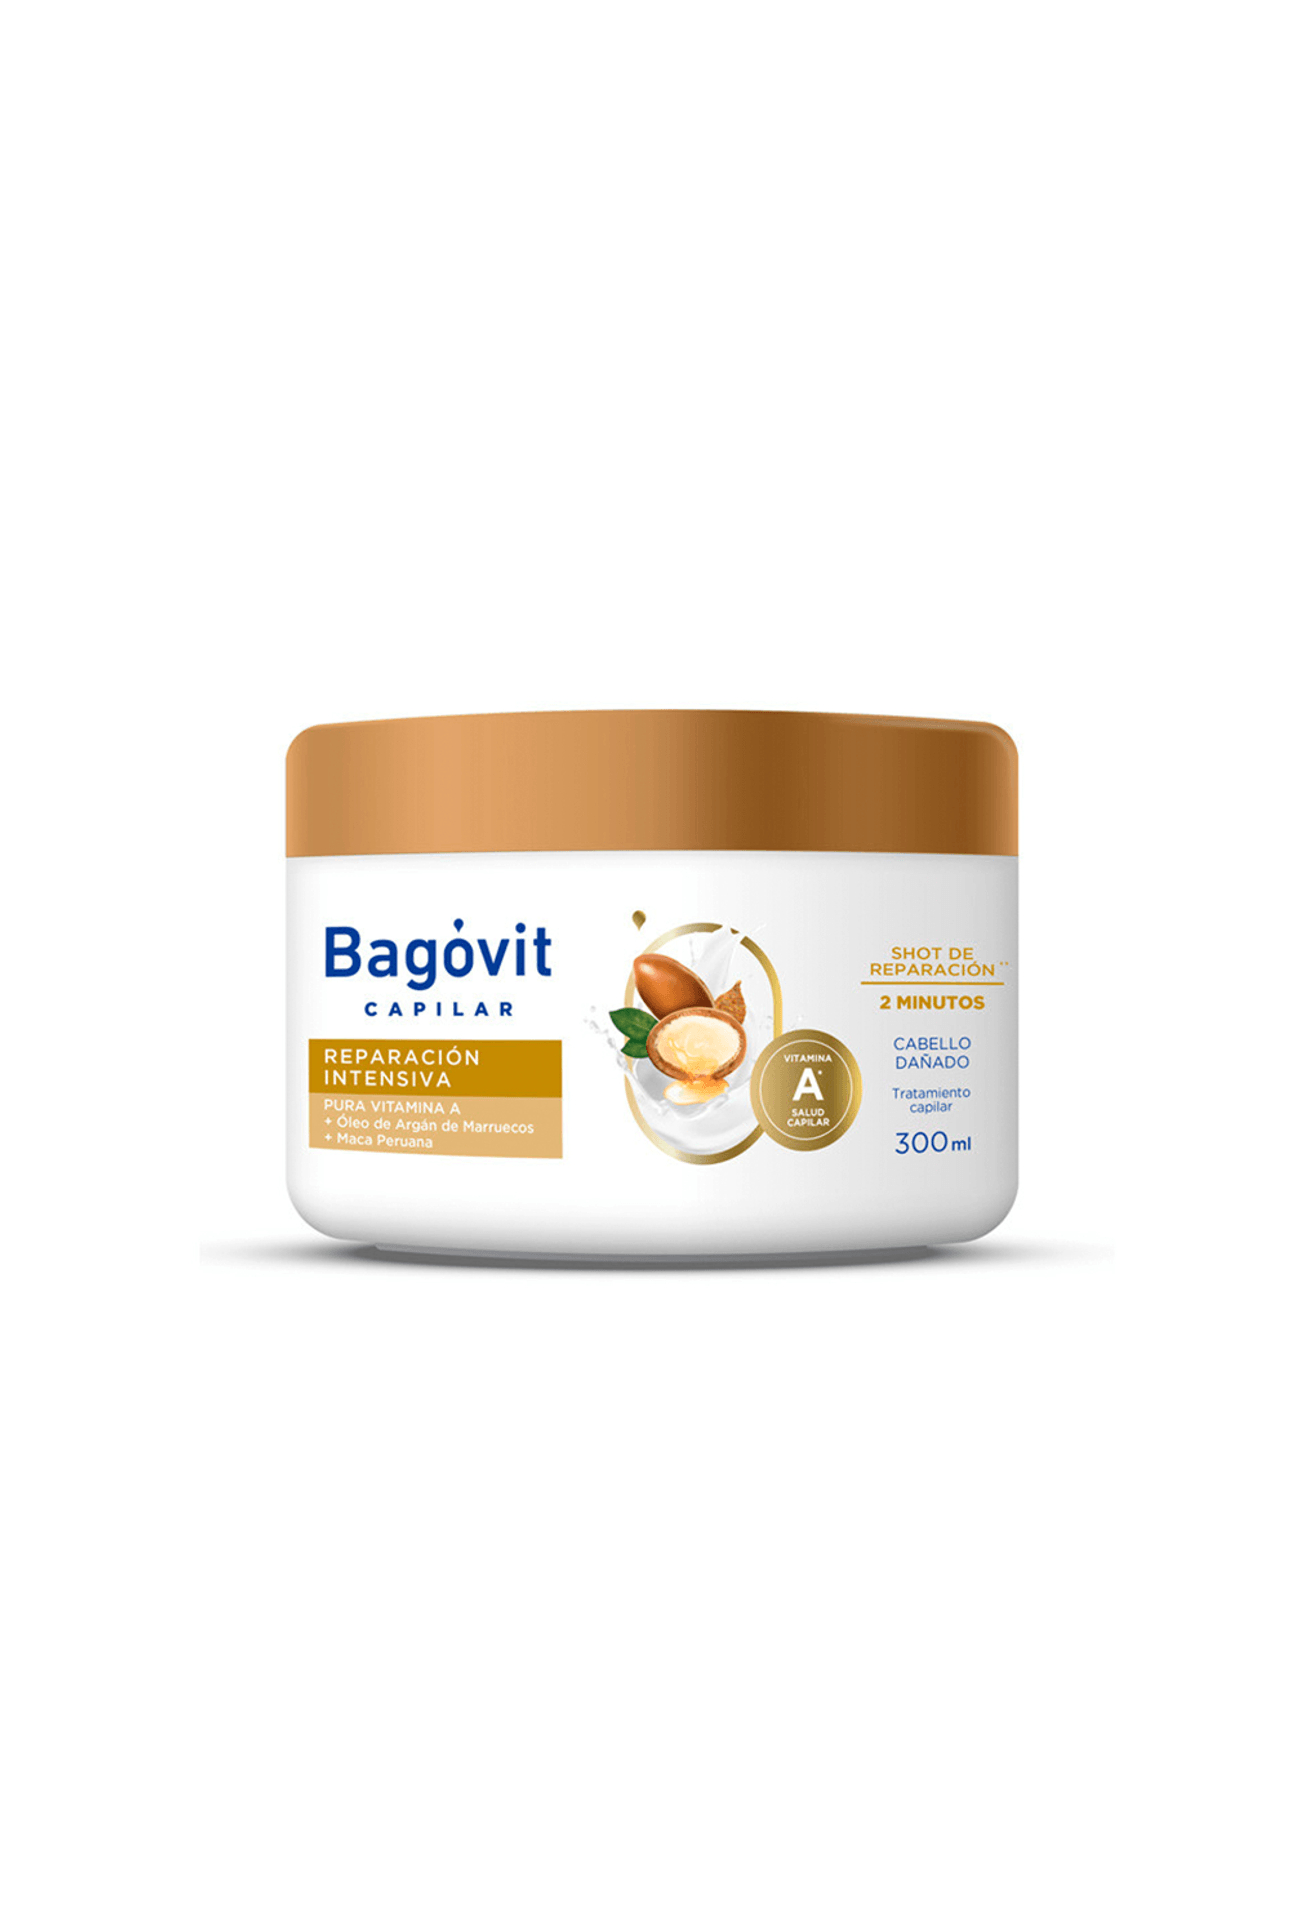 Bagovit-Tratamiento-Capilar-Bagovit--Reparacion-x-300ml-7790375269777_img1